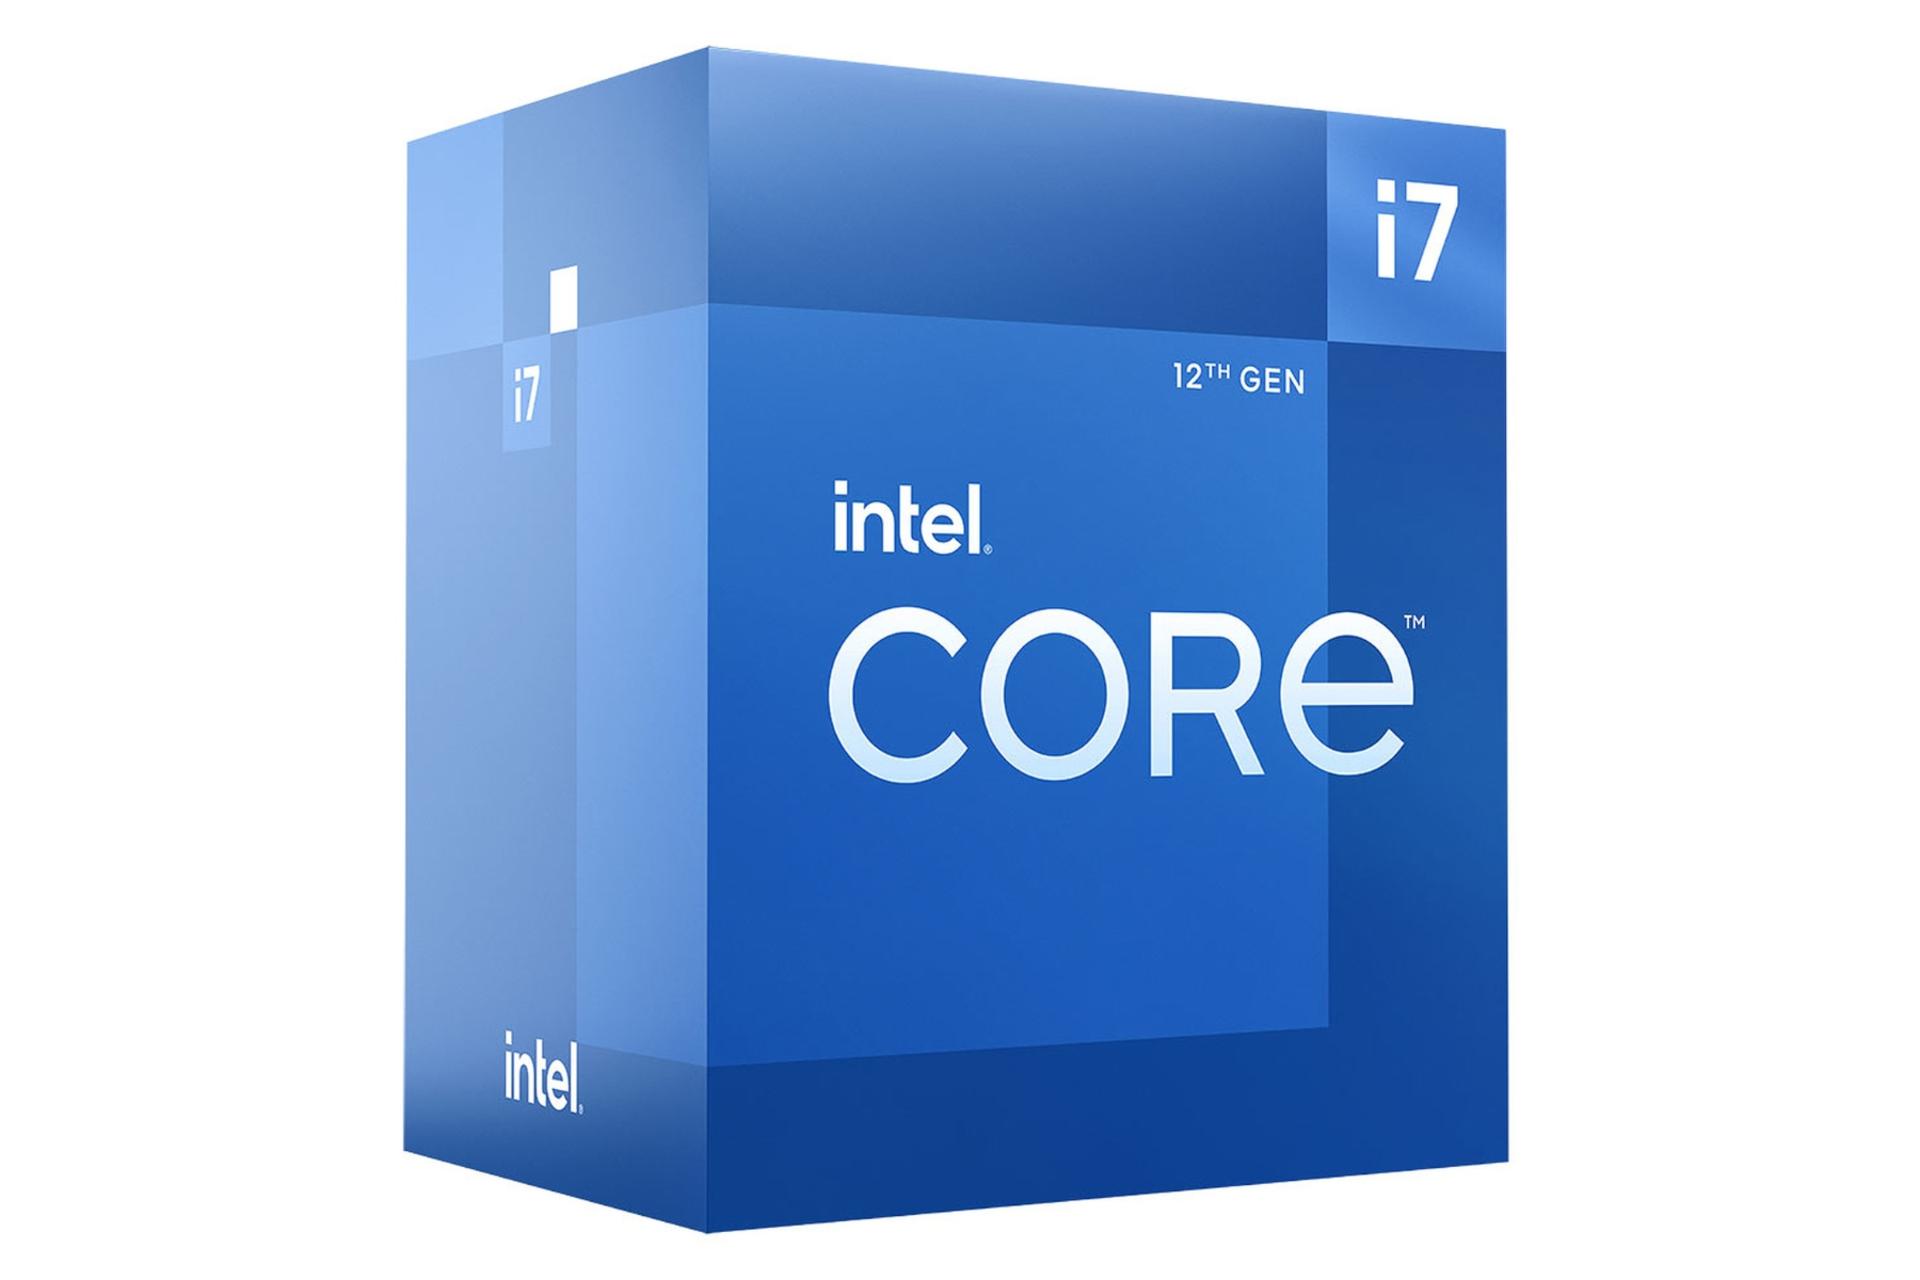 نمای چپ جعبه پردازنده اینتل Core i7 نسل دوازدهم / Intel Core i7 12th Gen